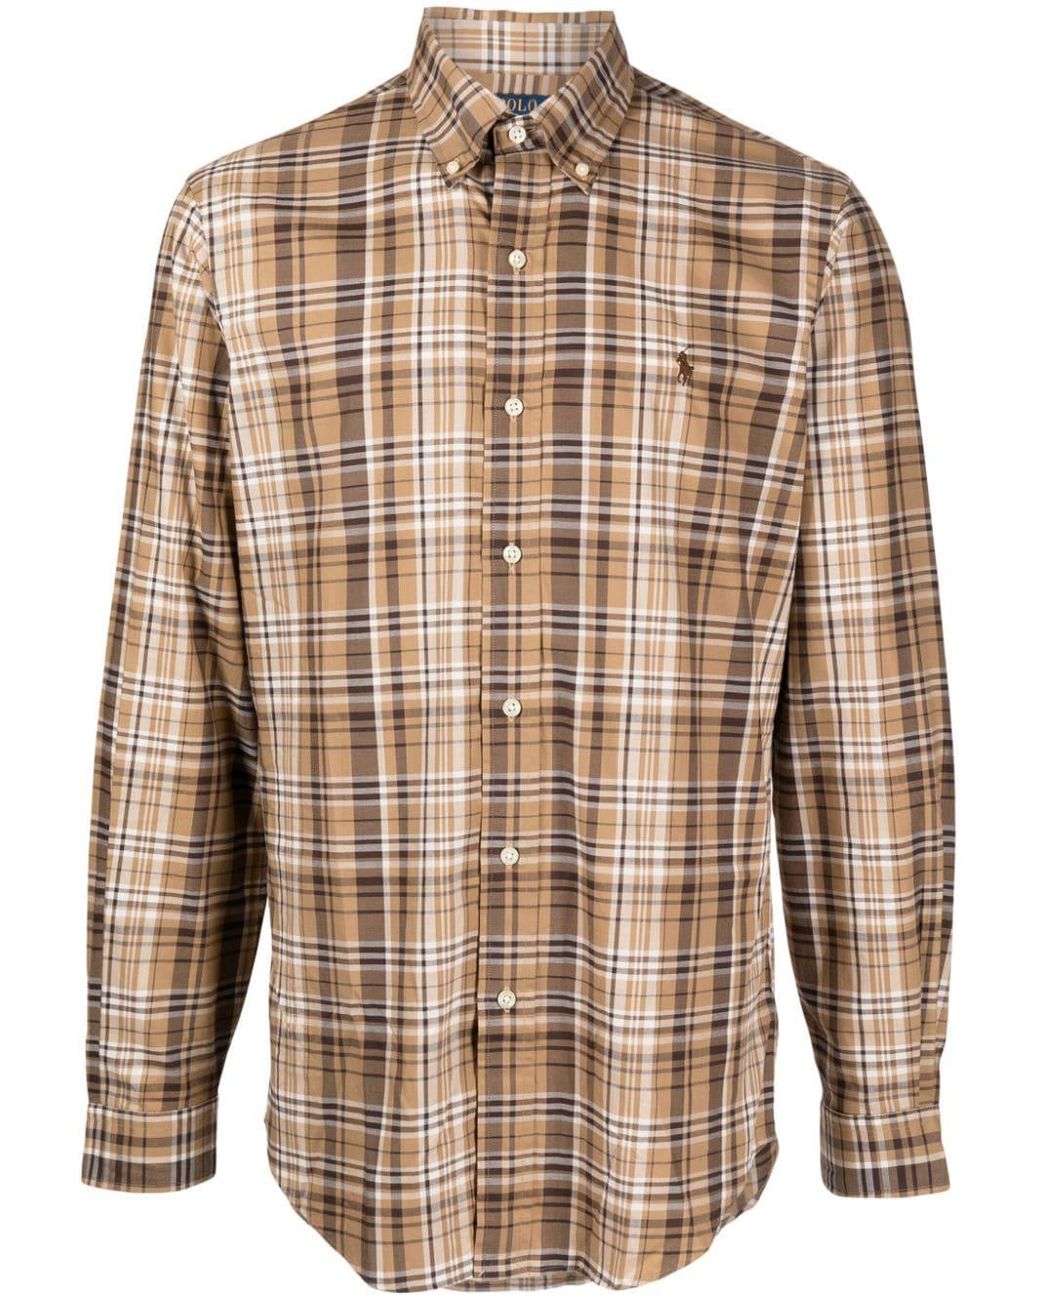 Burberry Brit Classic Polo Shirt, $175, farfetch.com